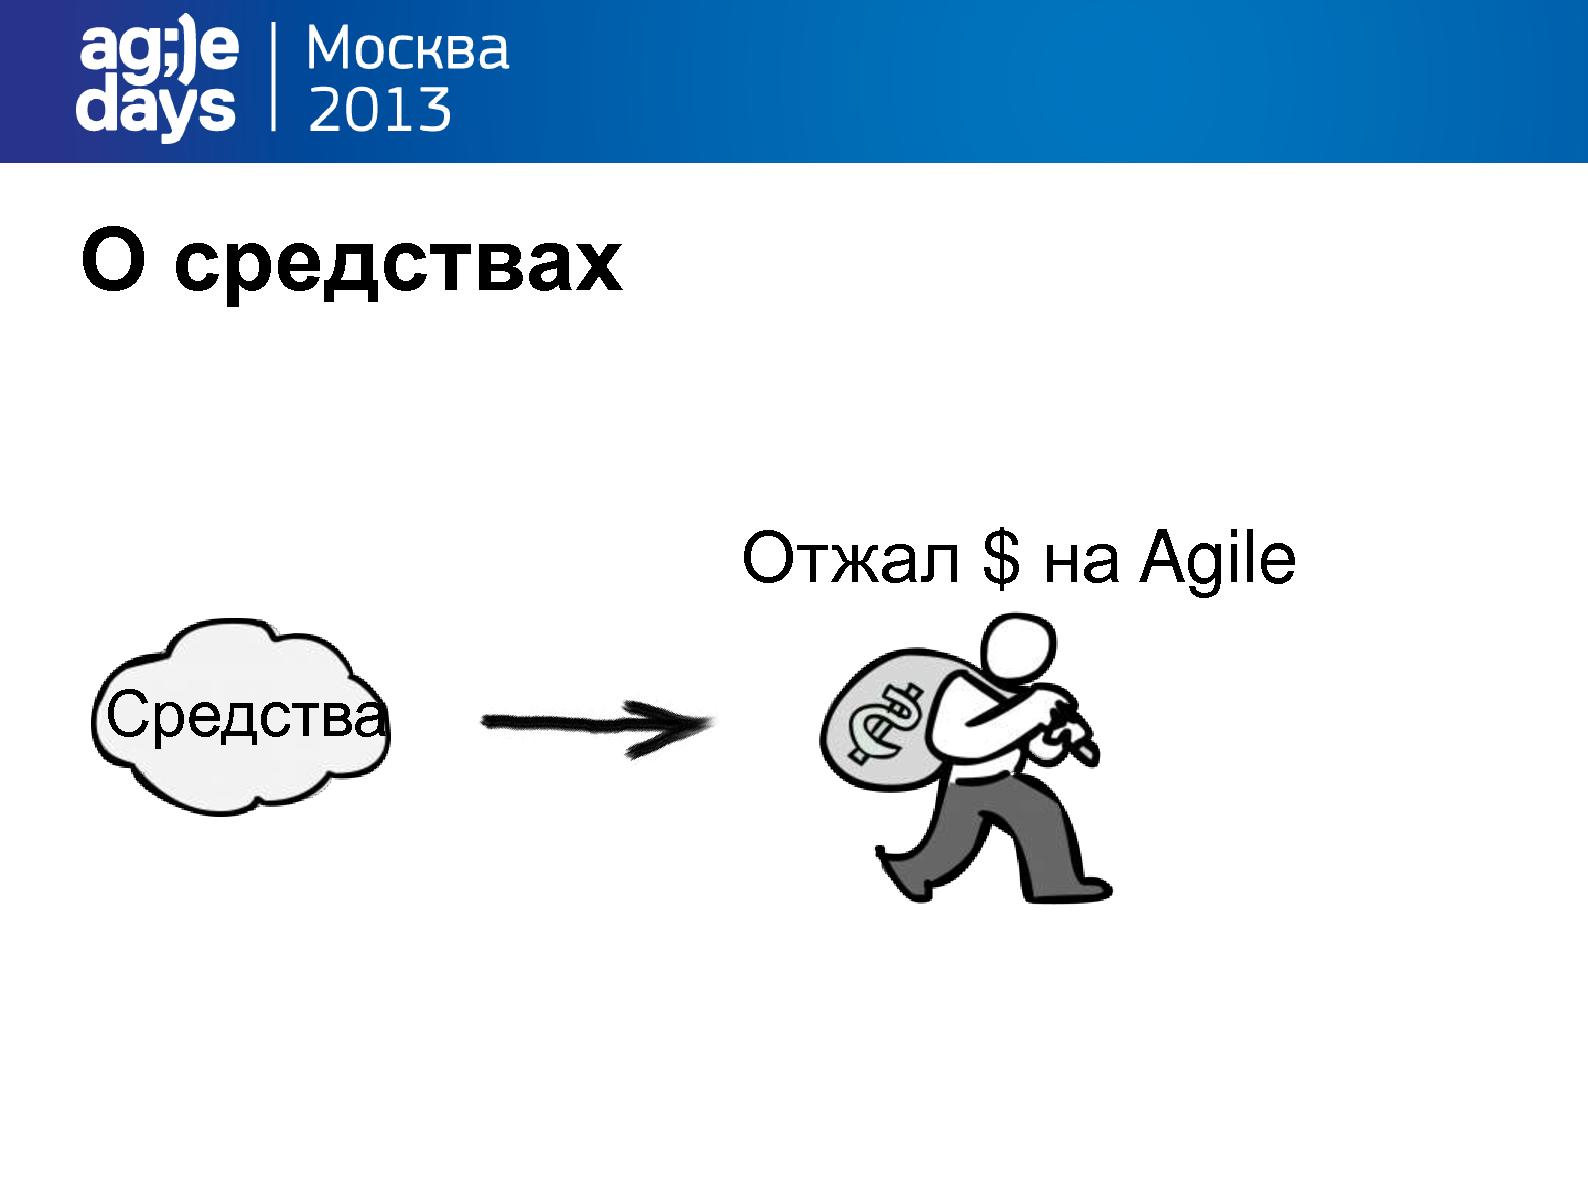 Файл:Agile Management. Теория и практика спасения крупного проекта (Алексей Пименов, AgileDays-2013).pdf